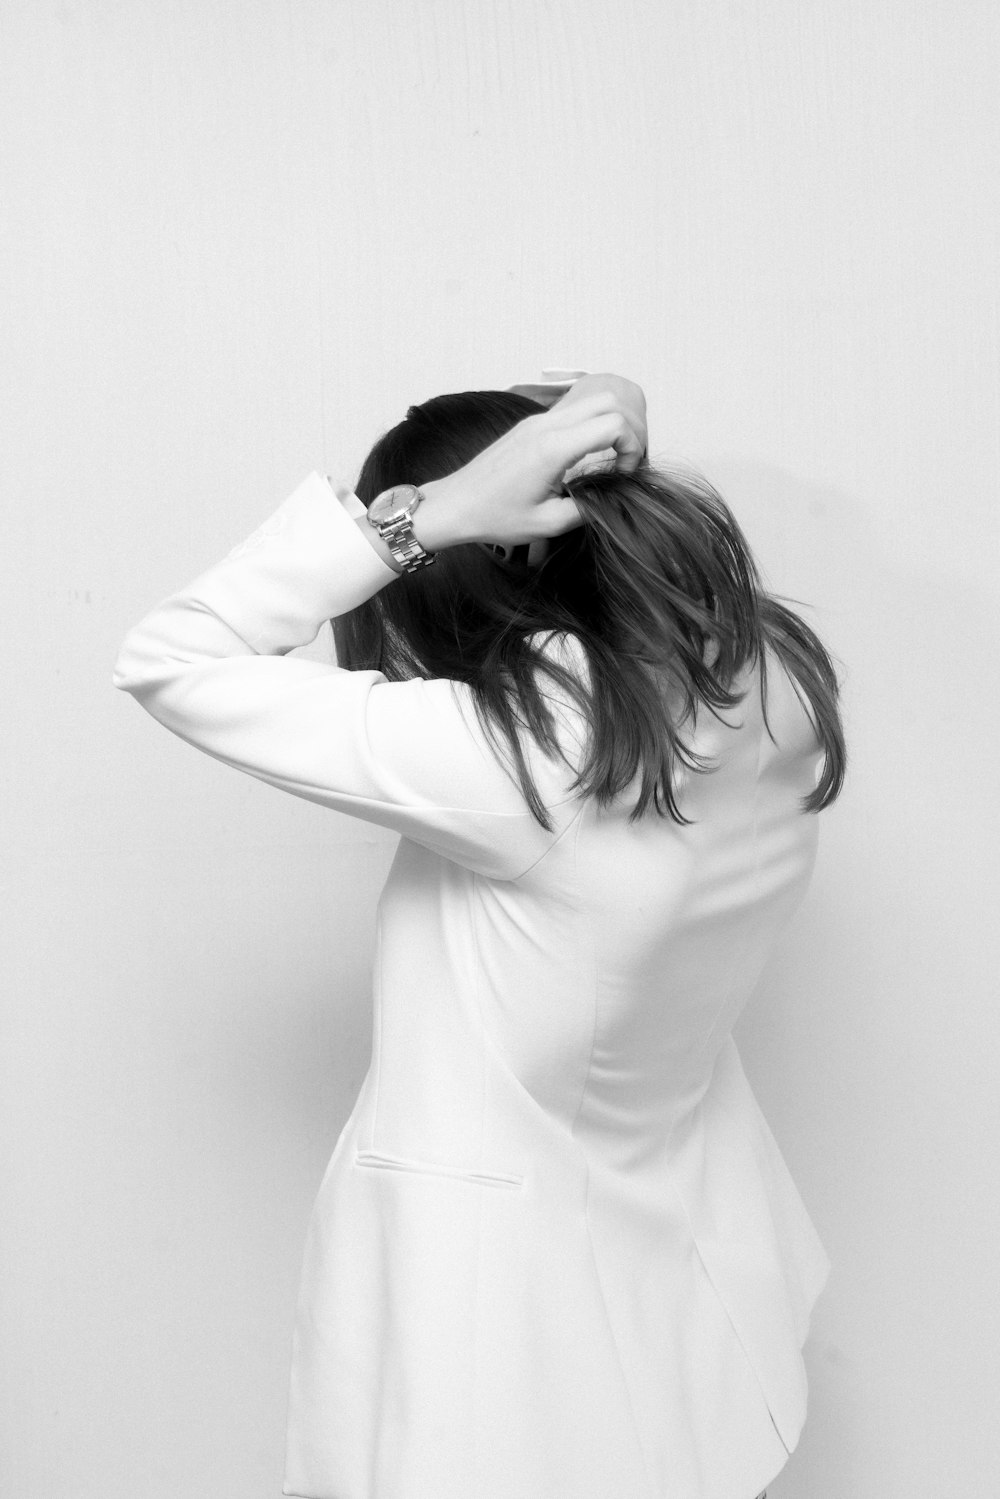 Foto mujer en bata blanca – Imagen No cara gratis en Unsplash